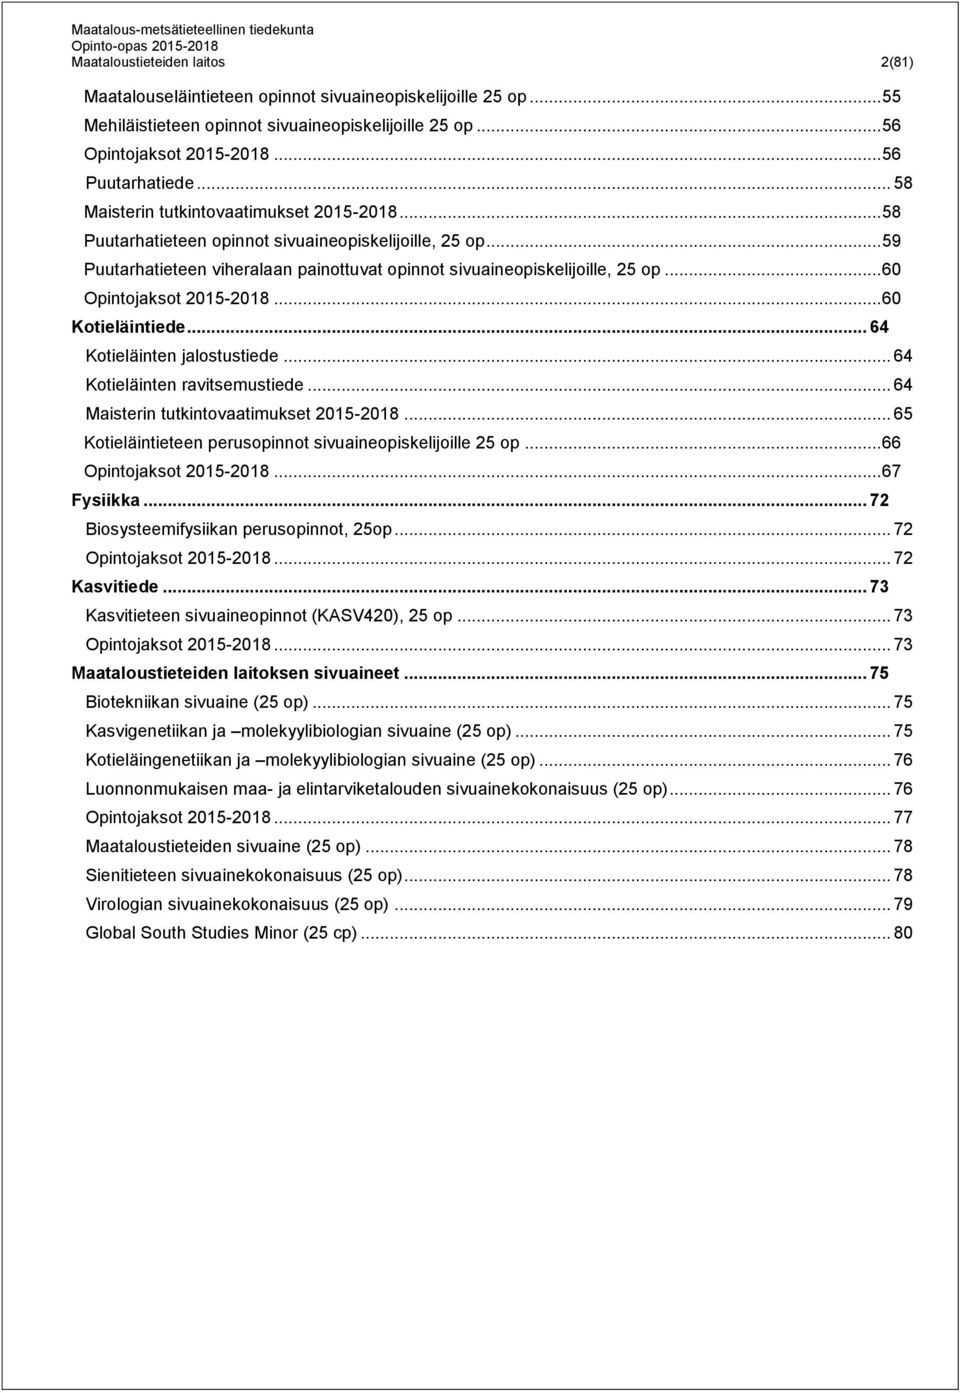 .. 60 Opintojaksot 2015-2018... 60 Kotieläintiede... 64 Kotieläinten jalostustiede... 64 Kotieläinten ravitsemustiede... 64 Maisterin tutkintovaatimukset 2015-2018.